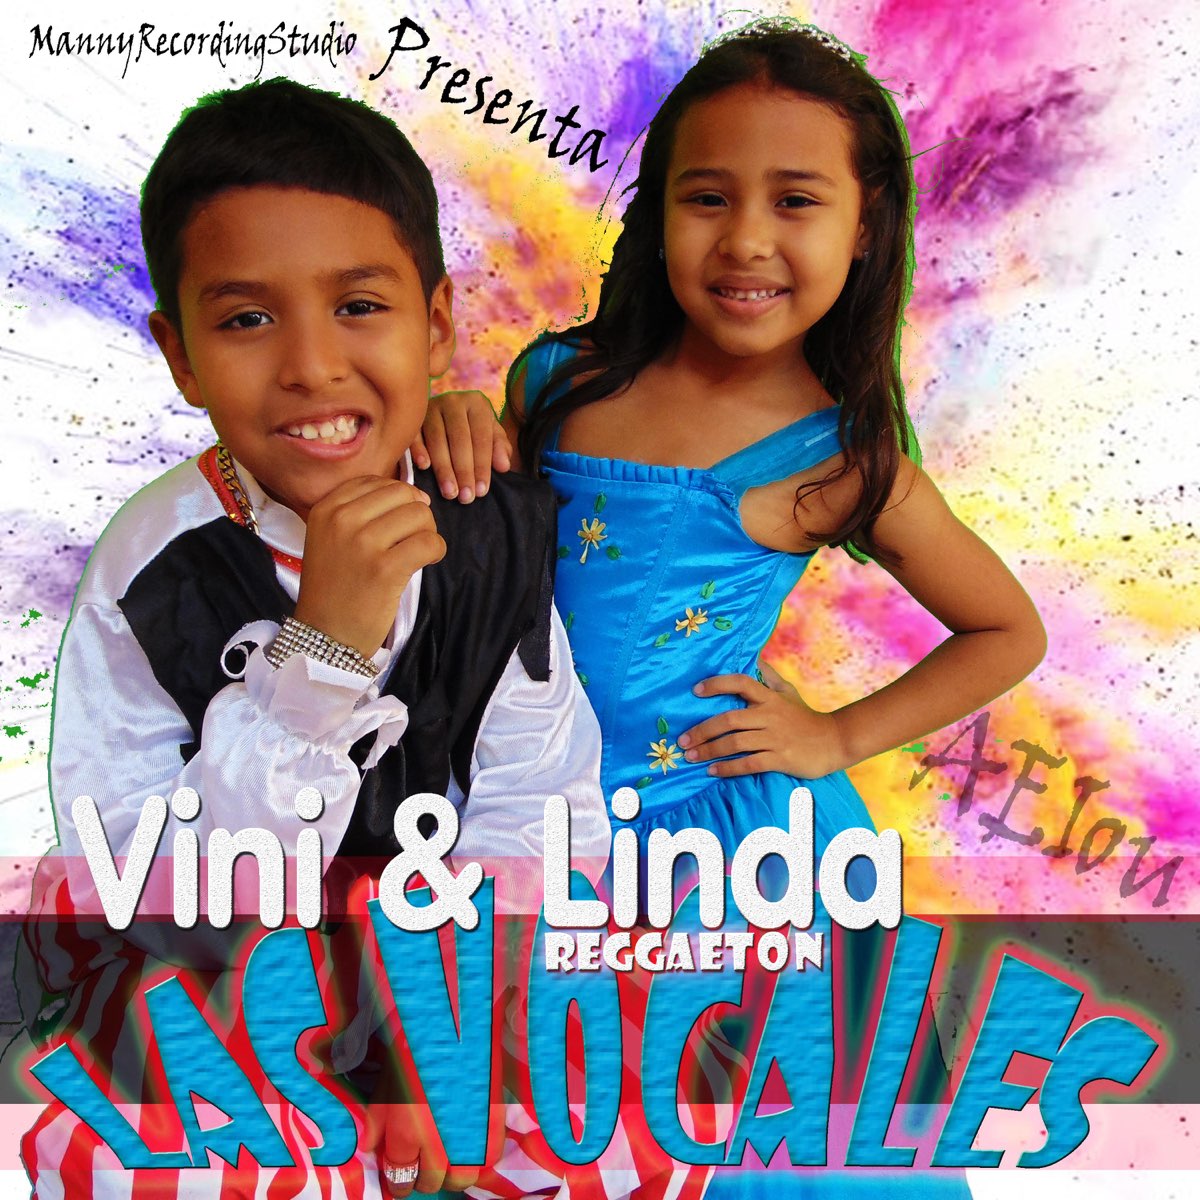 Asistente repetir septiembre Presenta Vini Boy Las Vocales Reggaeton (feat. Linda) - Single de Dolin en  Apple Music